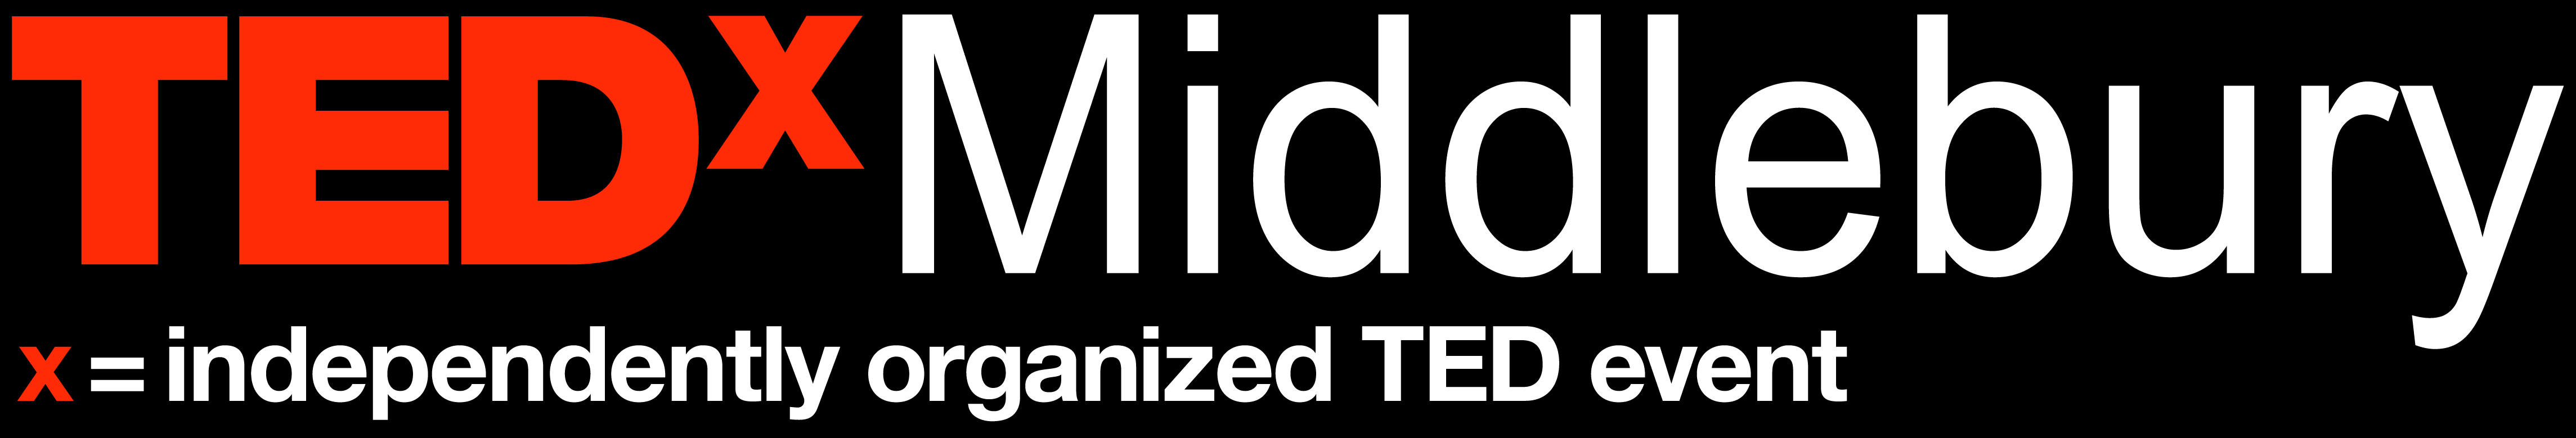 TEDxMiddlebury